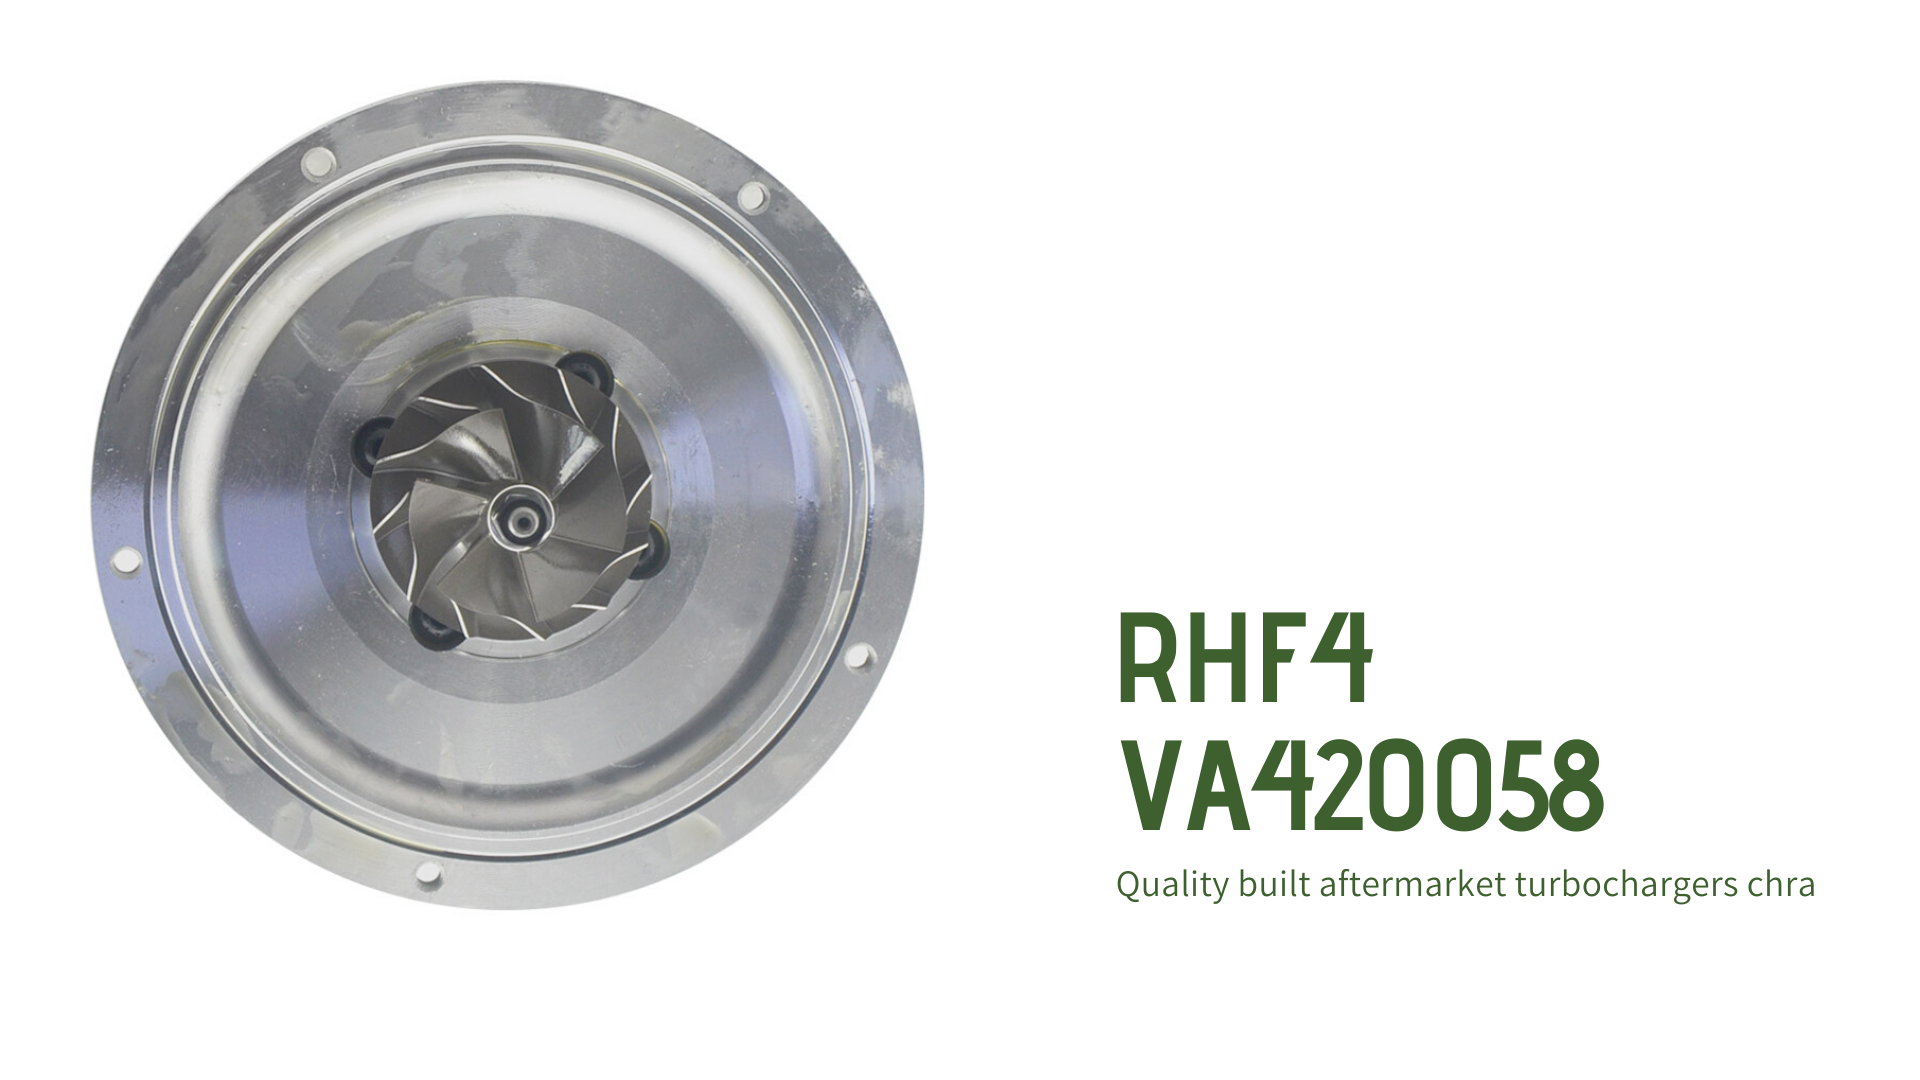 VA420058 Cartridge For RHF4 14411-VK500 Turbocharger